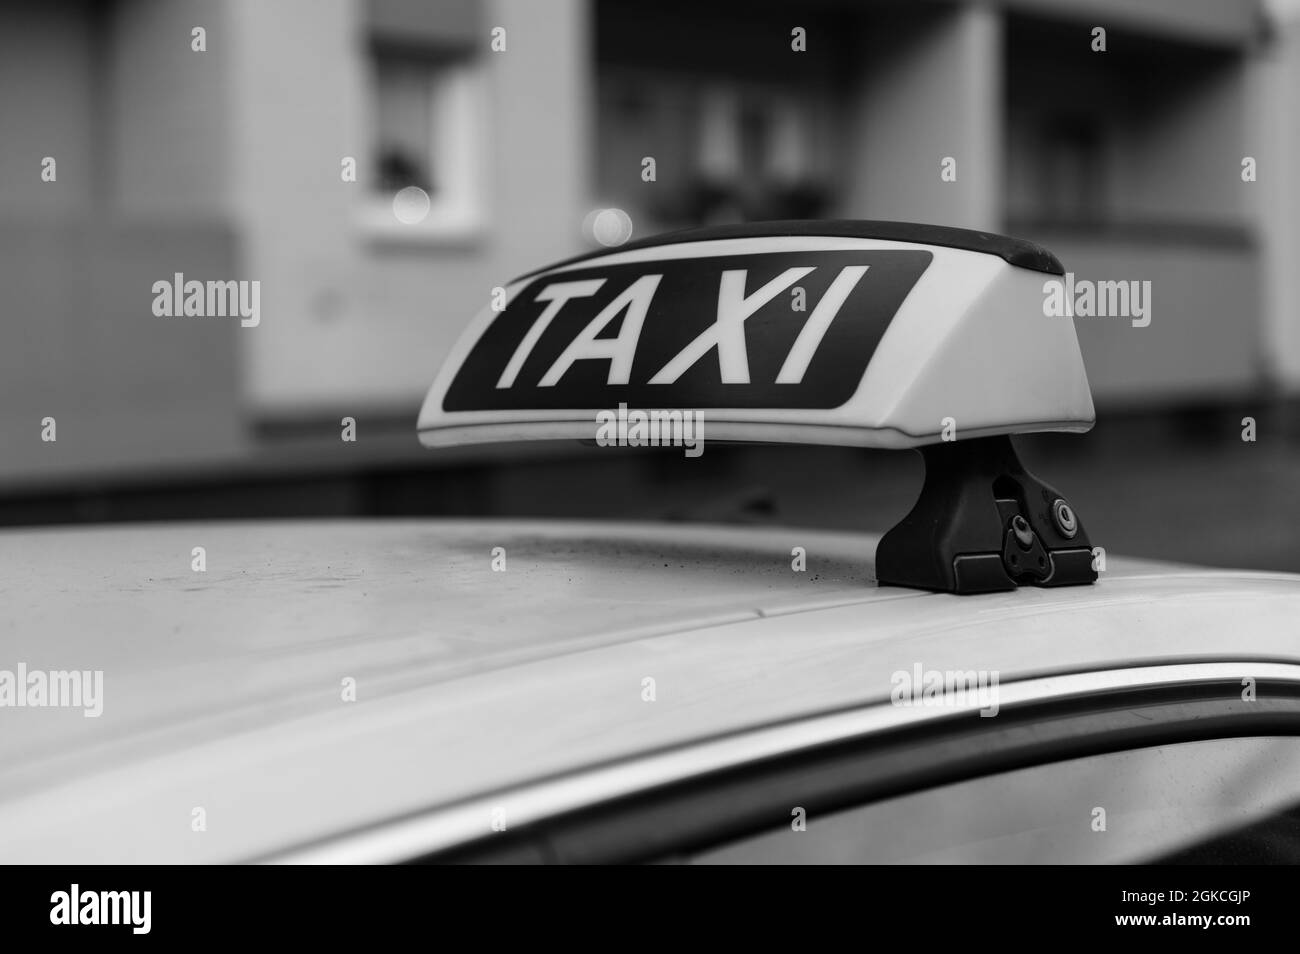 Taxi-Schild auf einem deutschen Taxi von rechts in schwarz-weiß Stockfoto